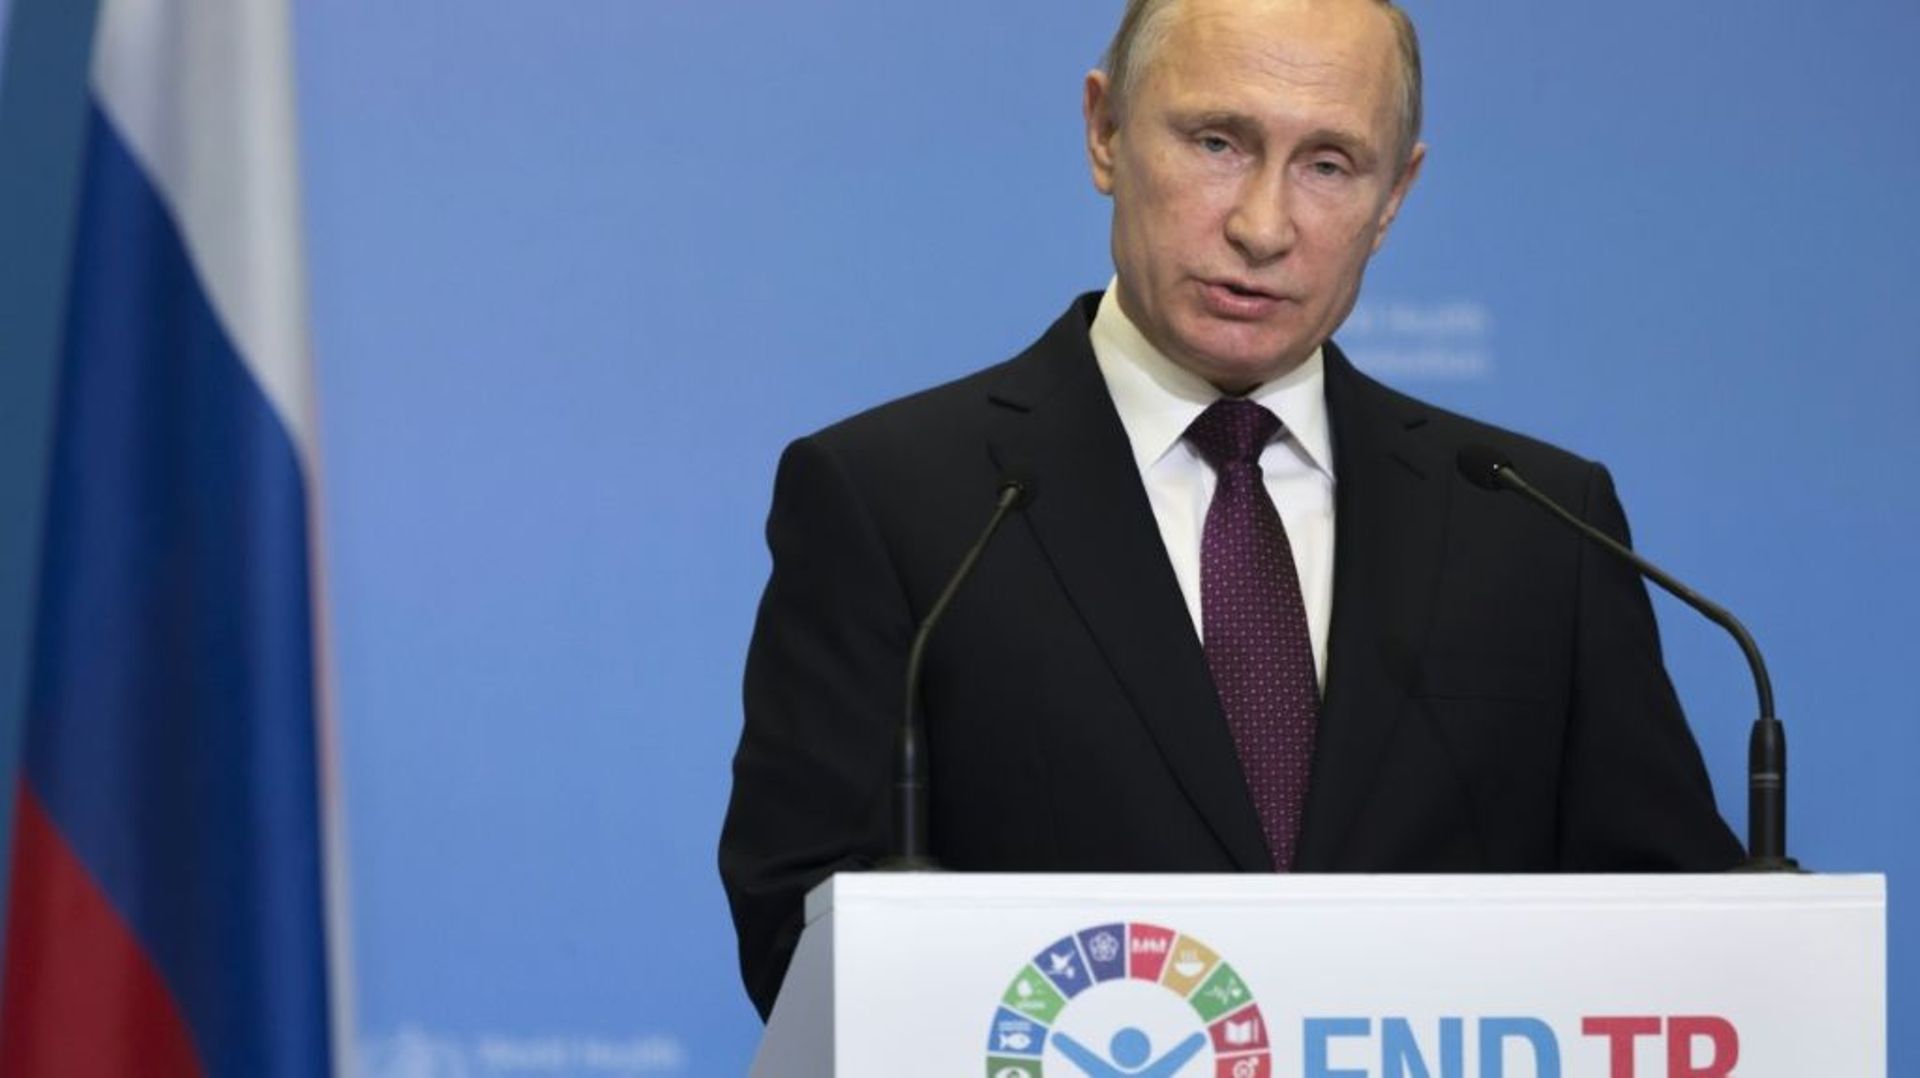 Le président russe Vladimir Poutine prononce un discours lors d'une conférence de l'Organisation mondiale de la Santé, à Moscou, le 16 novembre 2017